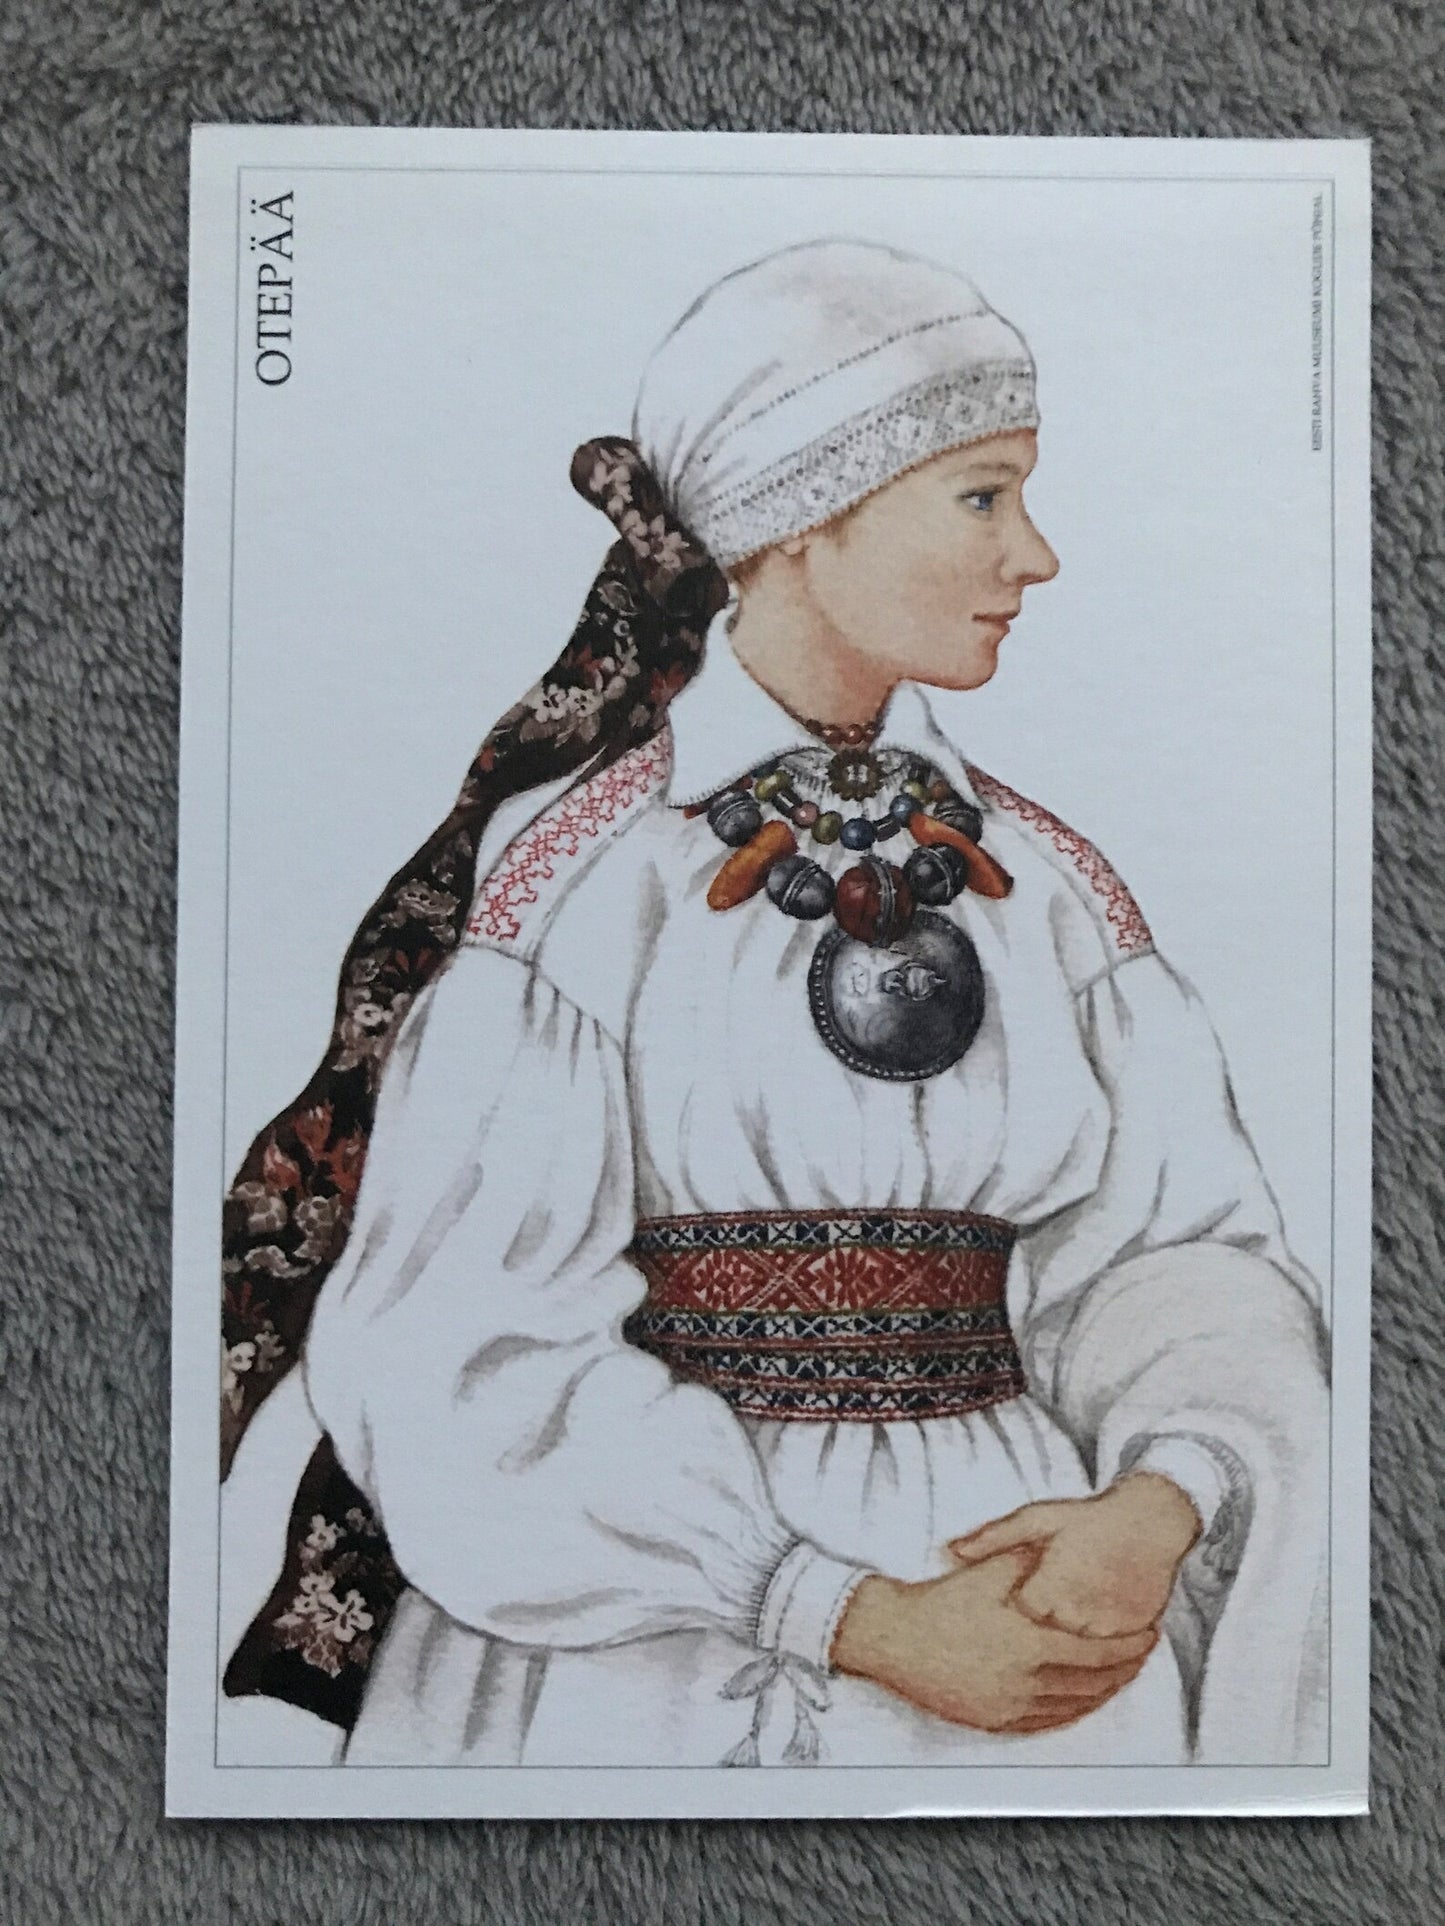 Estonian art postcard - Estonian Folk dress - OTEPÄÄ area National costume - Artist Mari Kaarma - 2000 - unused